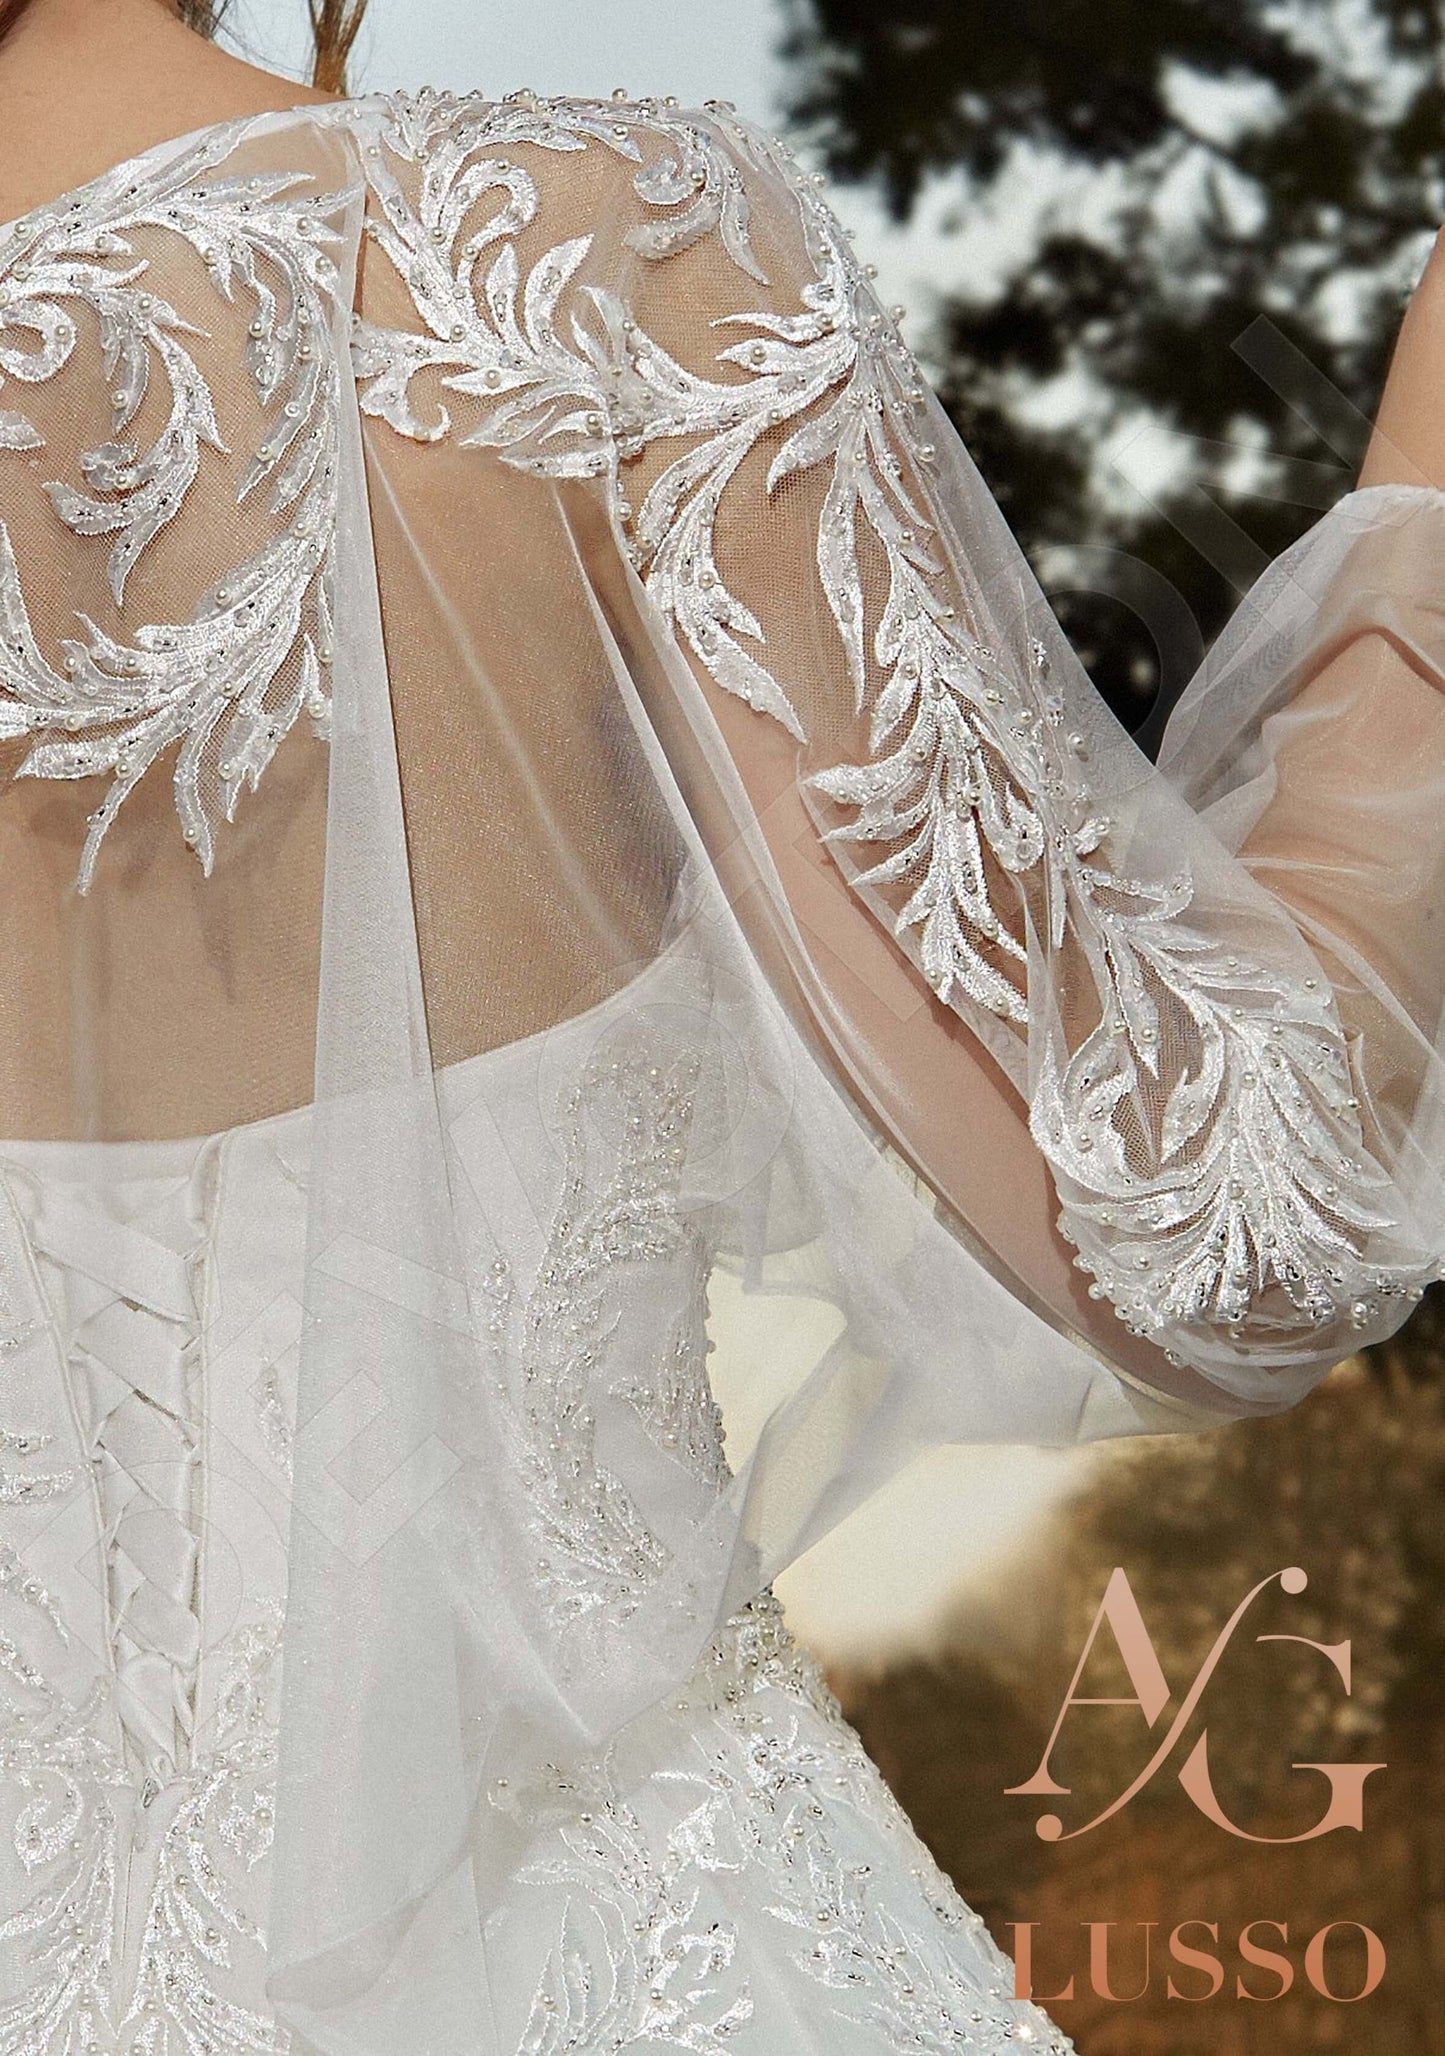 Mirabella Open back Princess/Ball Gown Strapless Wedding Dress 5